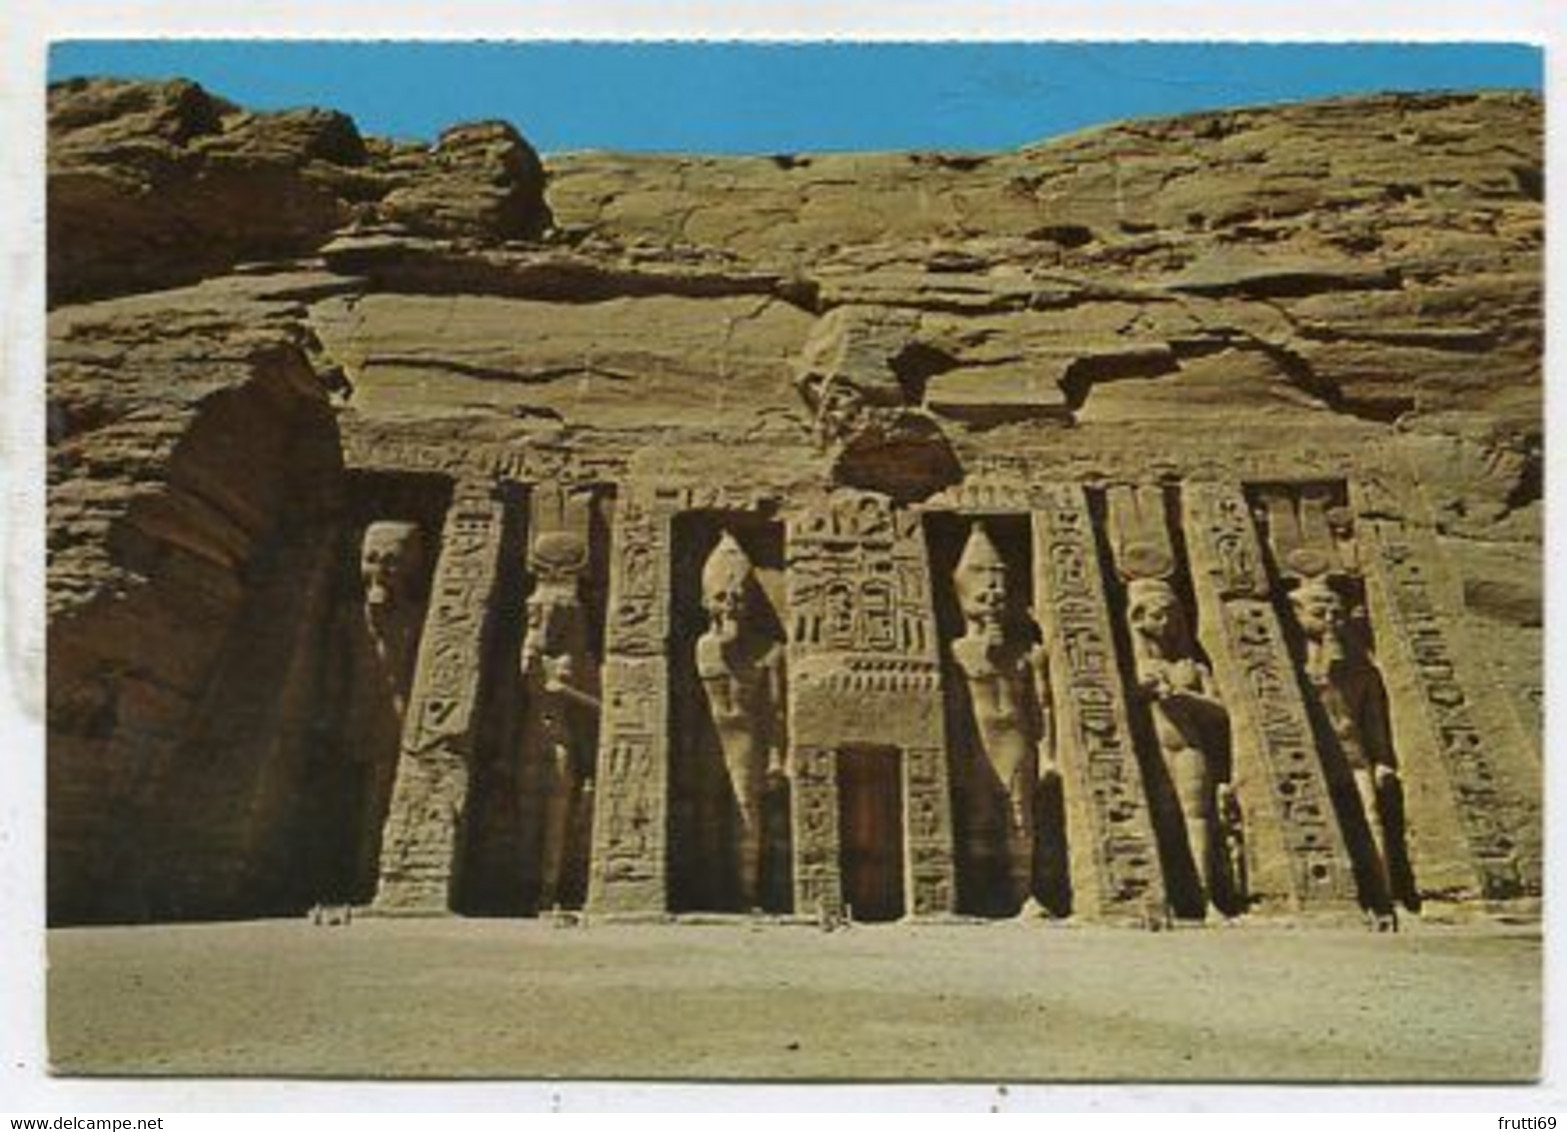 AK 102230 EGYPT - Abu Simbel - Small Rock Temple - Tempels Van Aboe Simbel